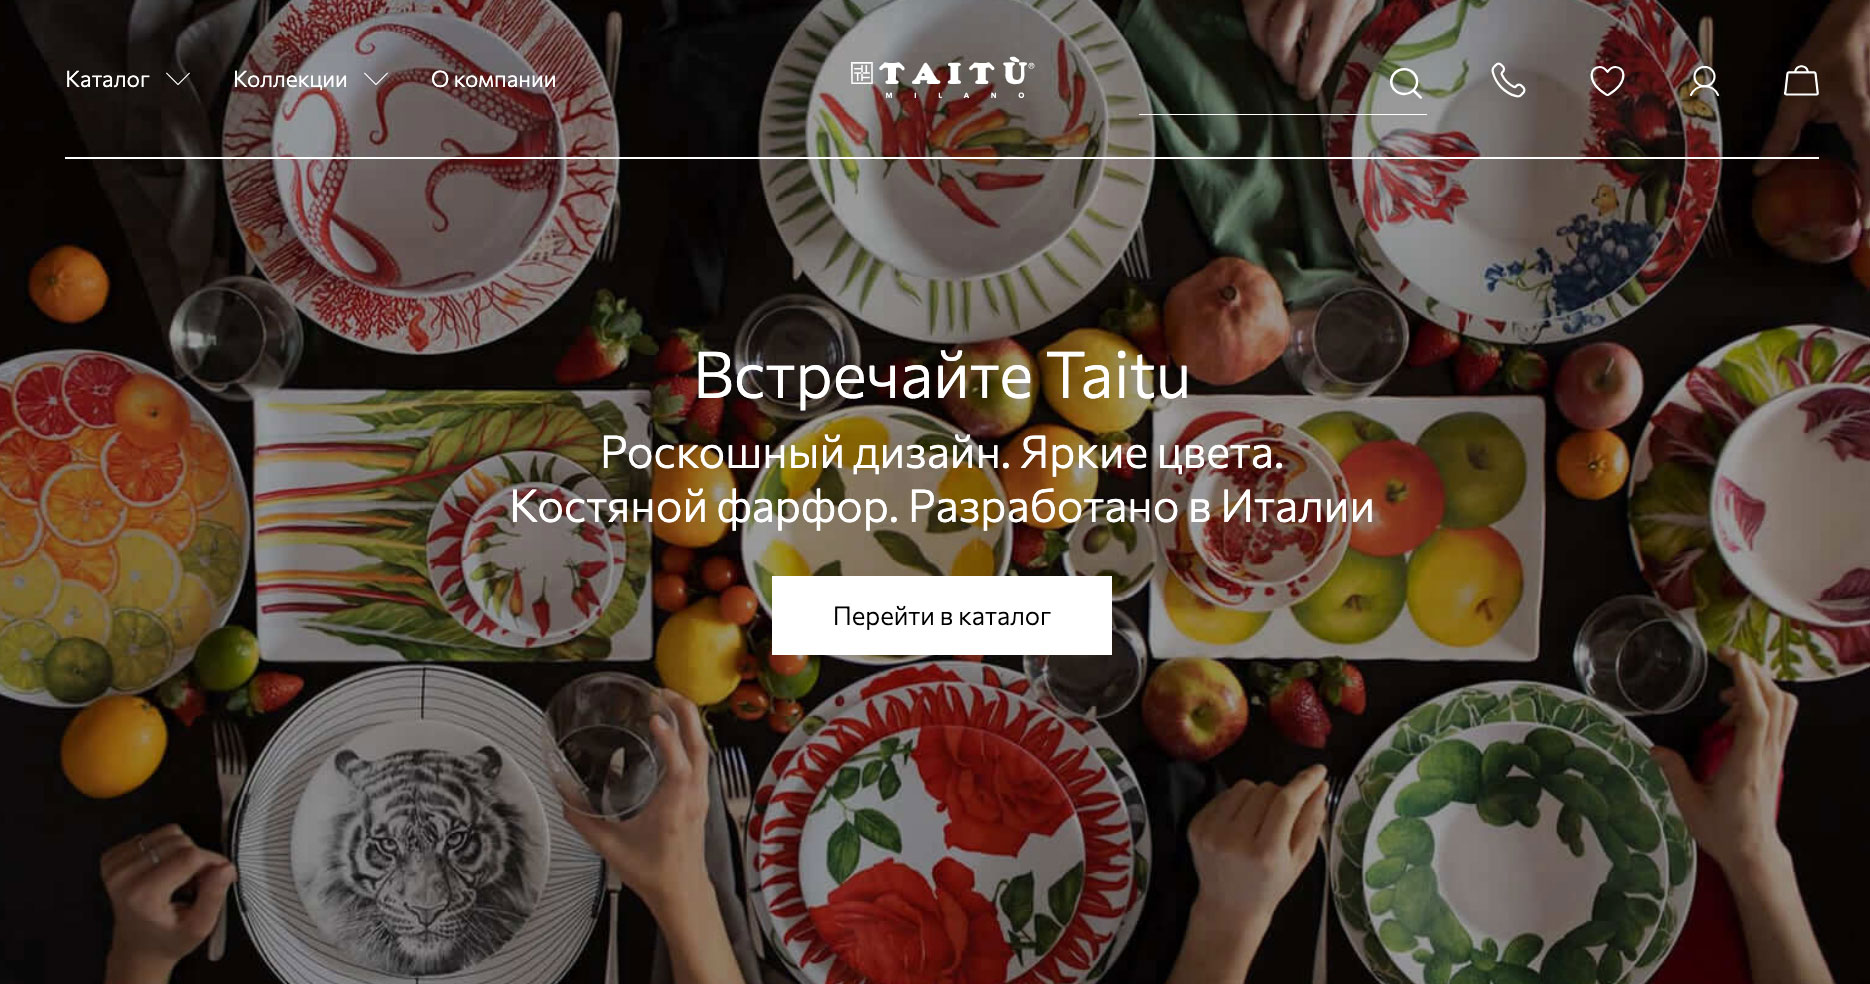 Разработка интернет-магазина на 1С-Битрикс бренда посуды Taitu